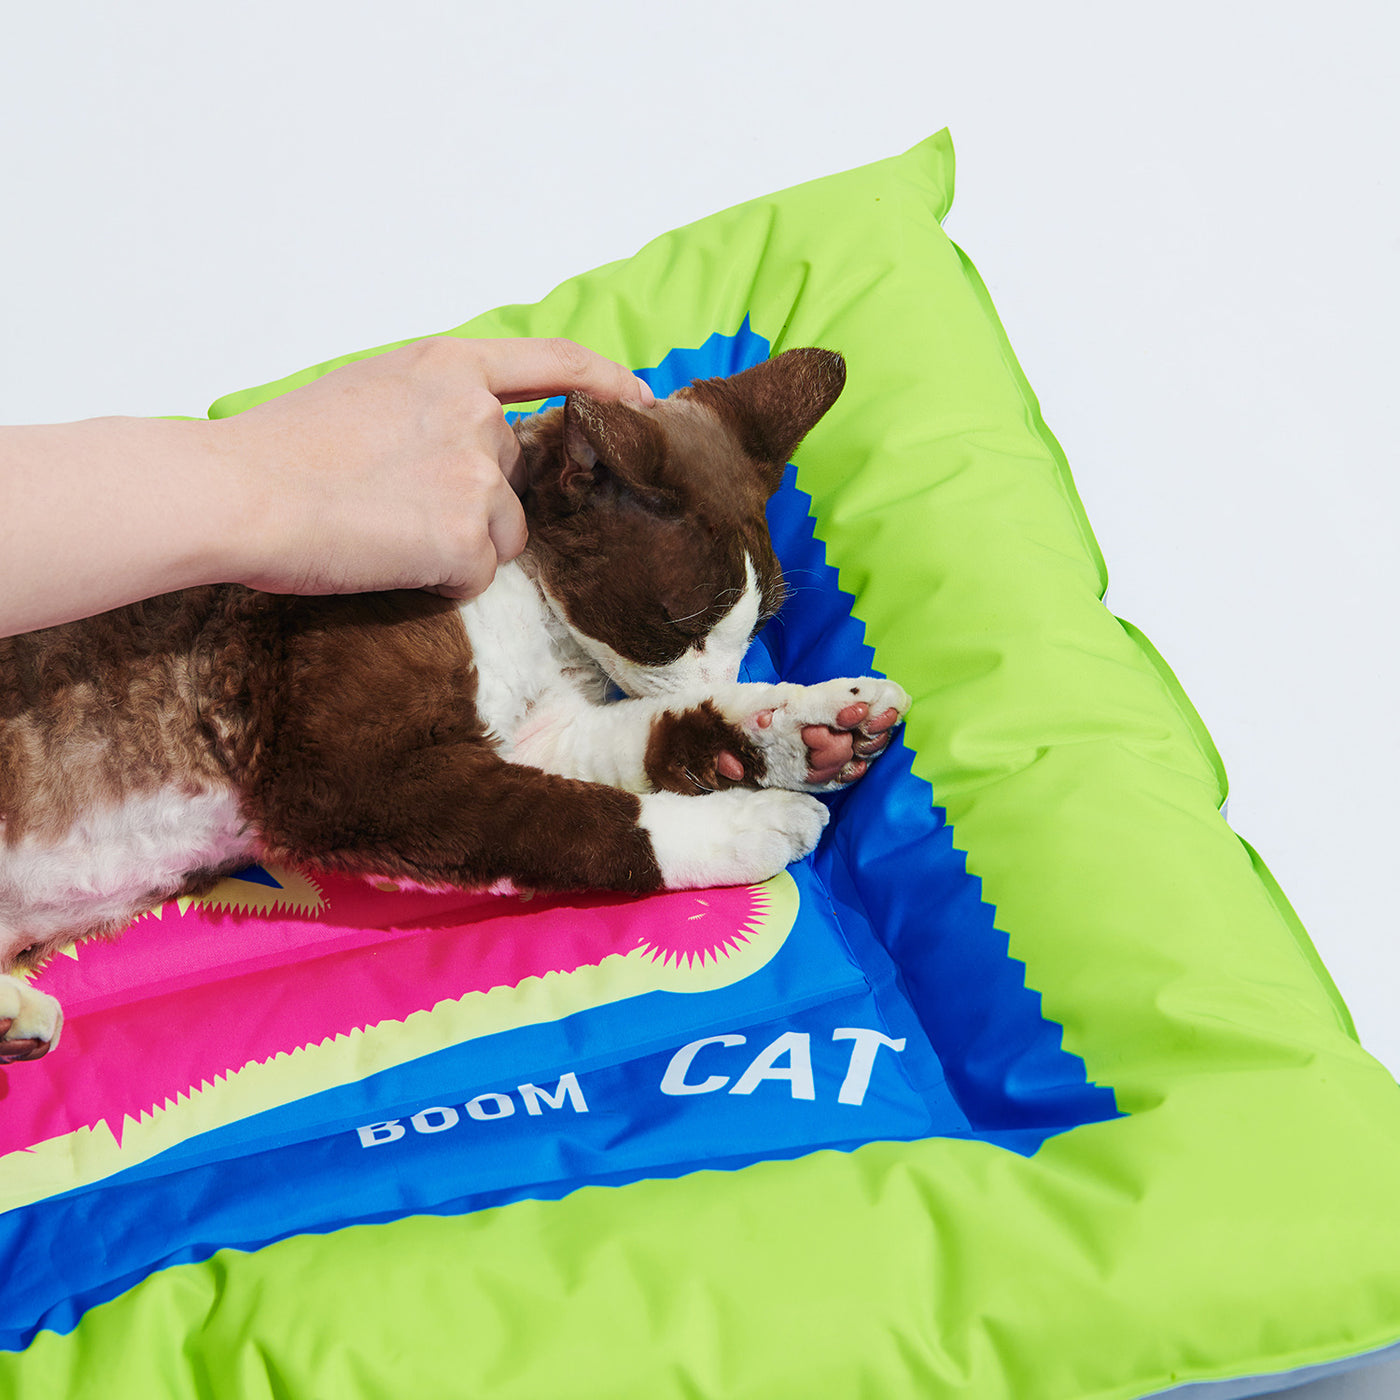 Boom Boom Cat - Pet Cooling Bed